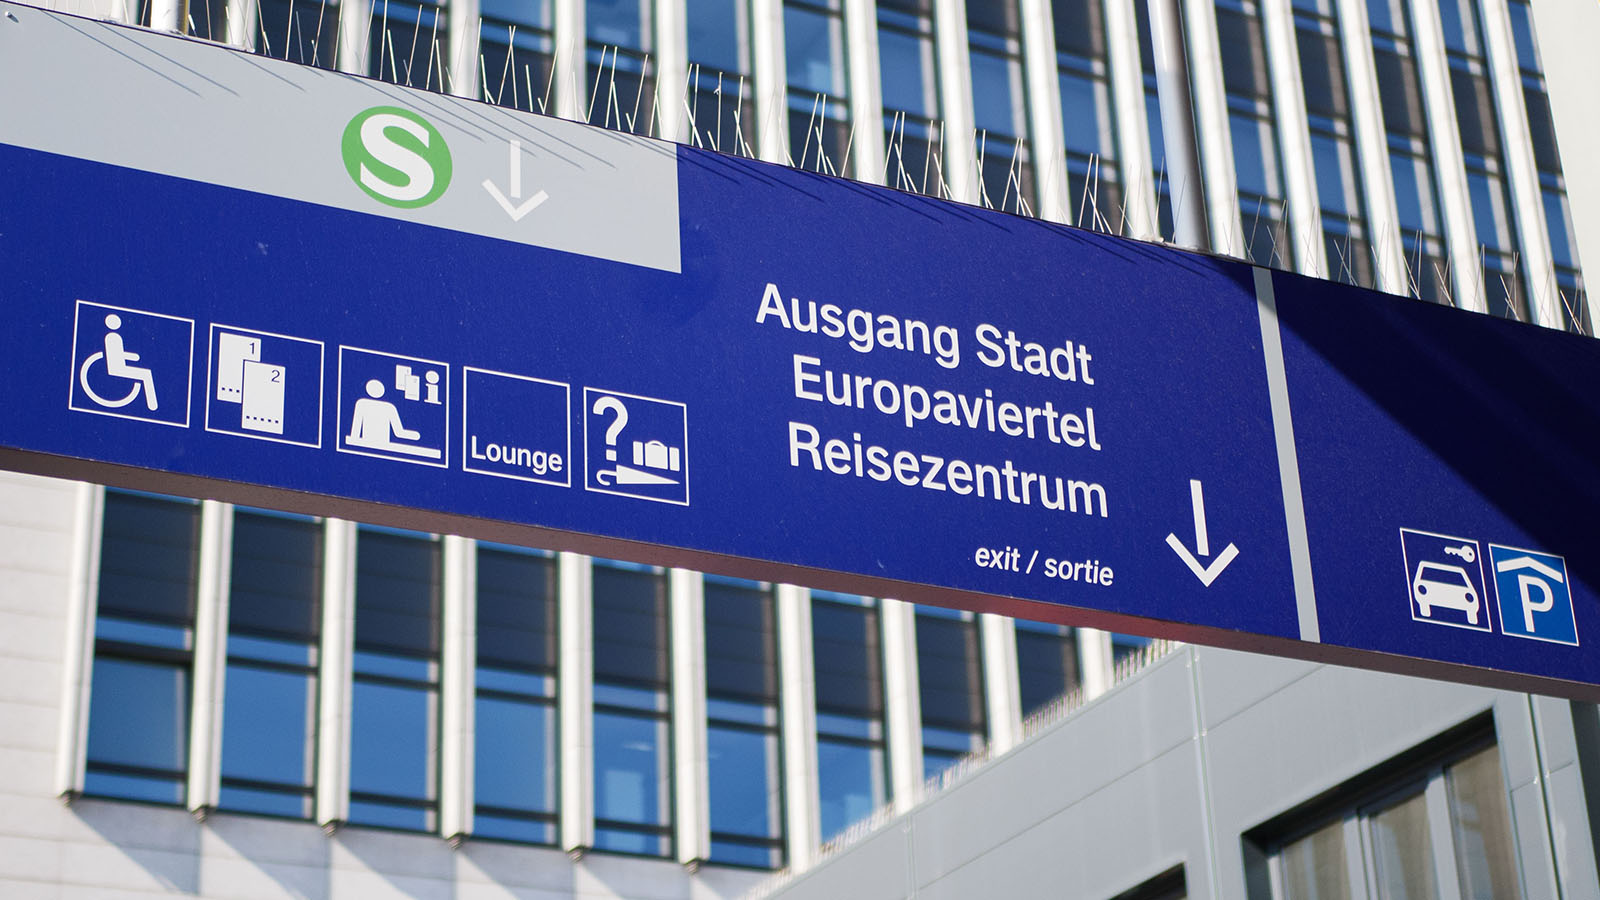 Ein blaues Schild im Bahnhof zeigt den Ausgang in Richtung Stadt, Europaviertel und Reisezentrum